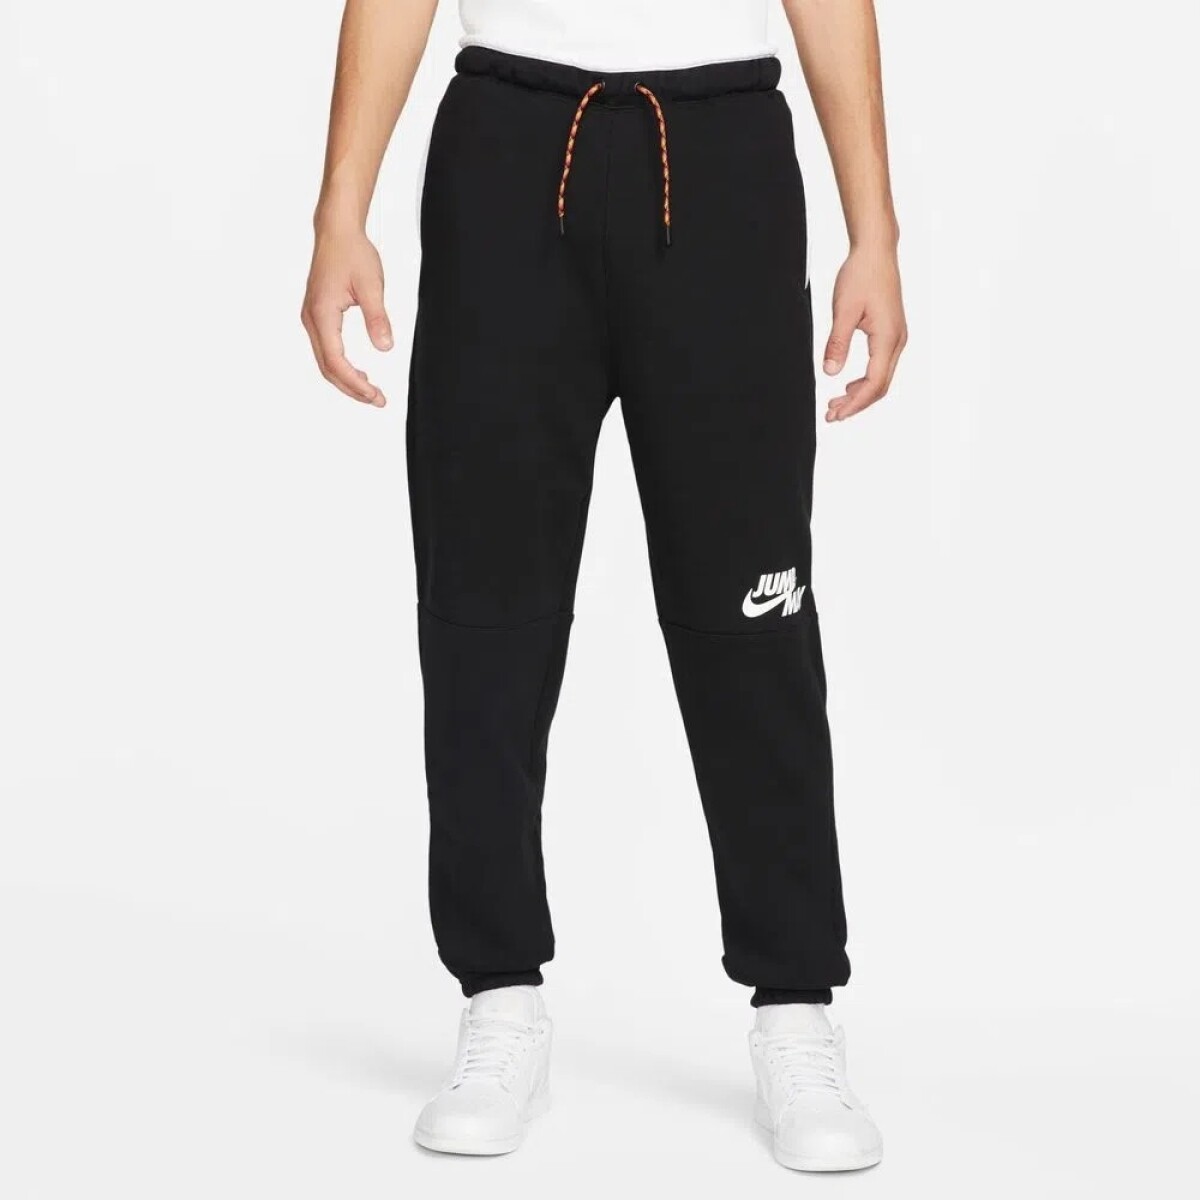 Pantalon Hombre Nike Jordan Black - S/C 